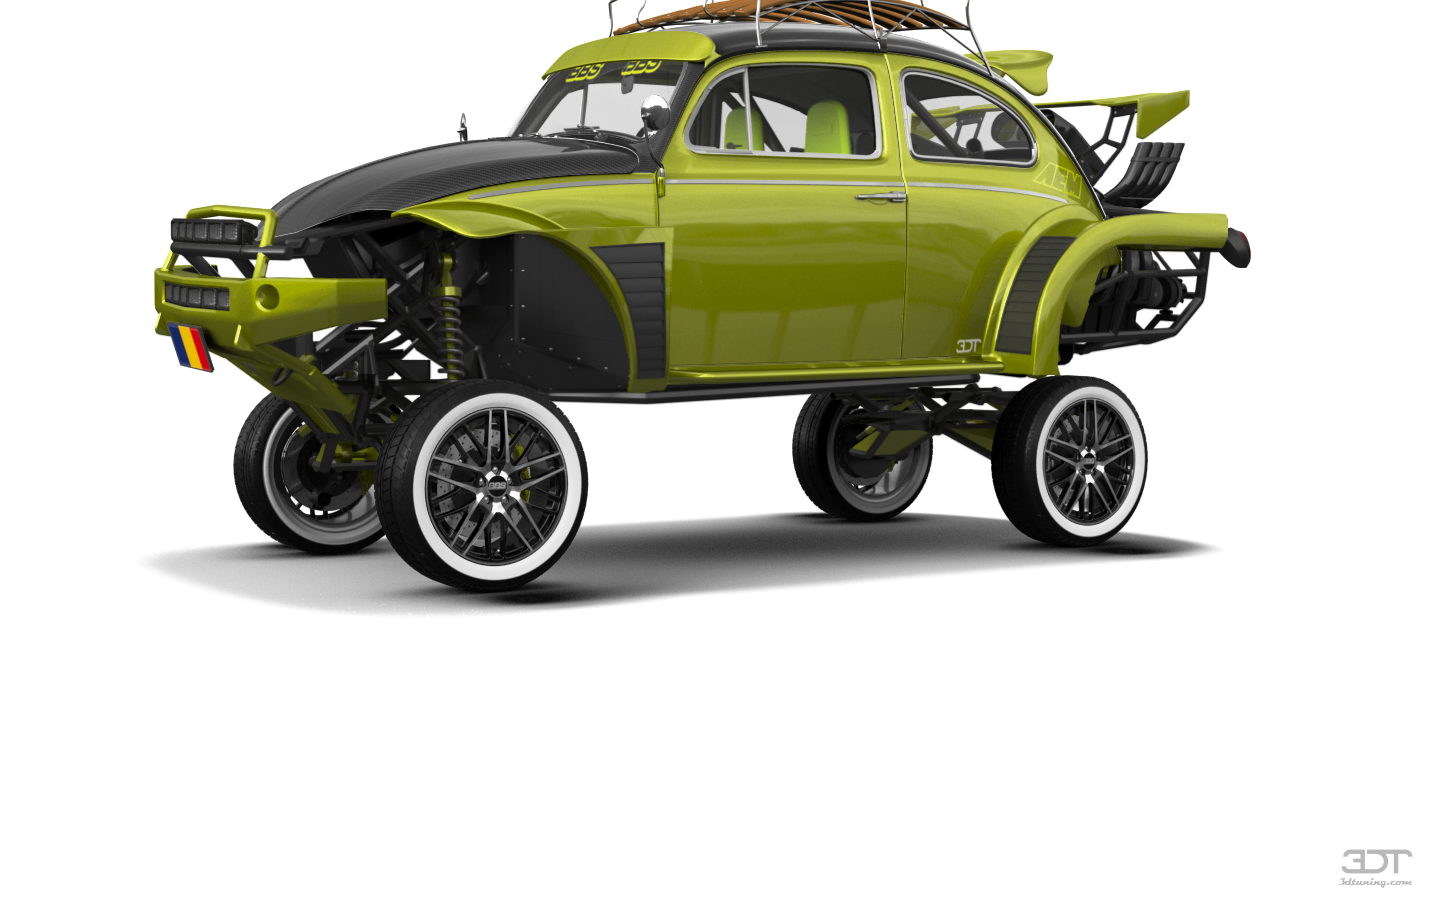 Volkswagen Beetle'64